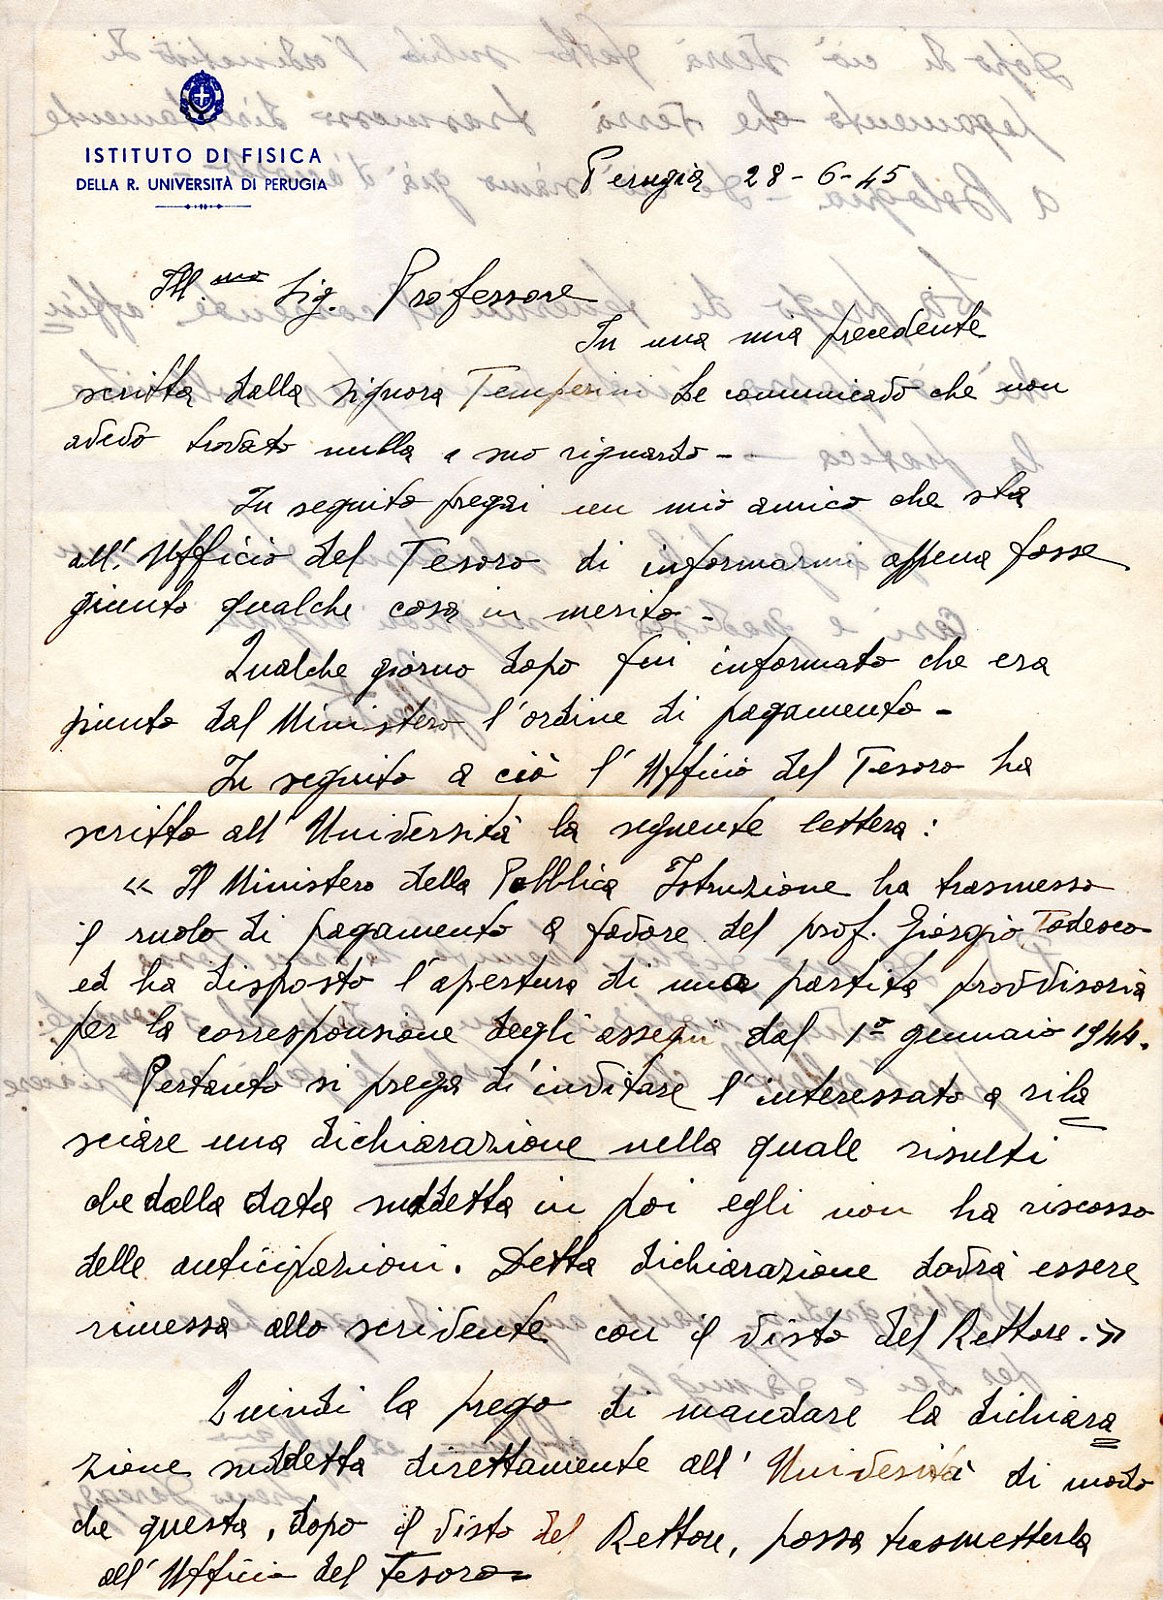 Famiglia Todesco – Banzi
Lettere durante l’anno di clandestinità 1944-1945 - Pagina della memoria